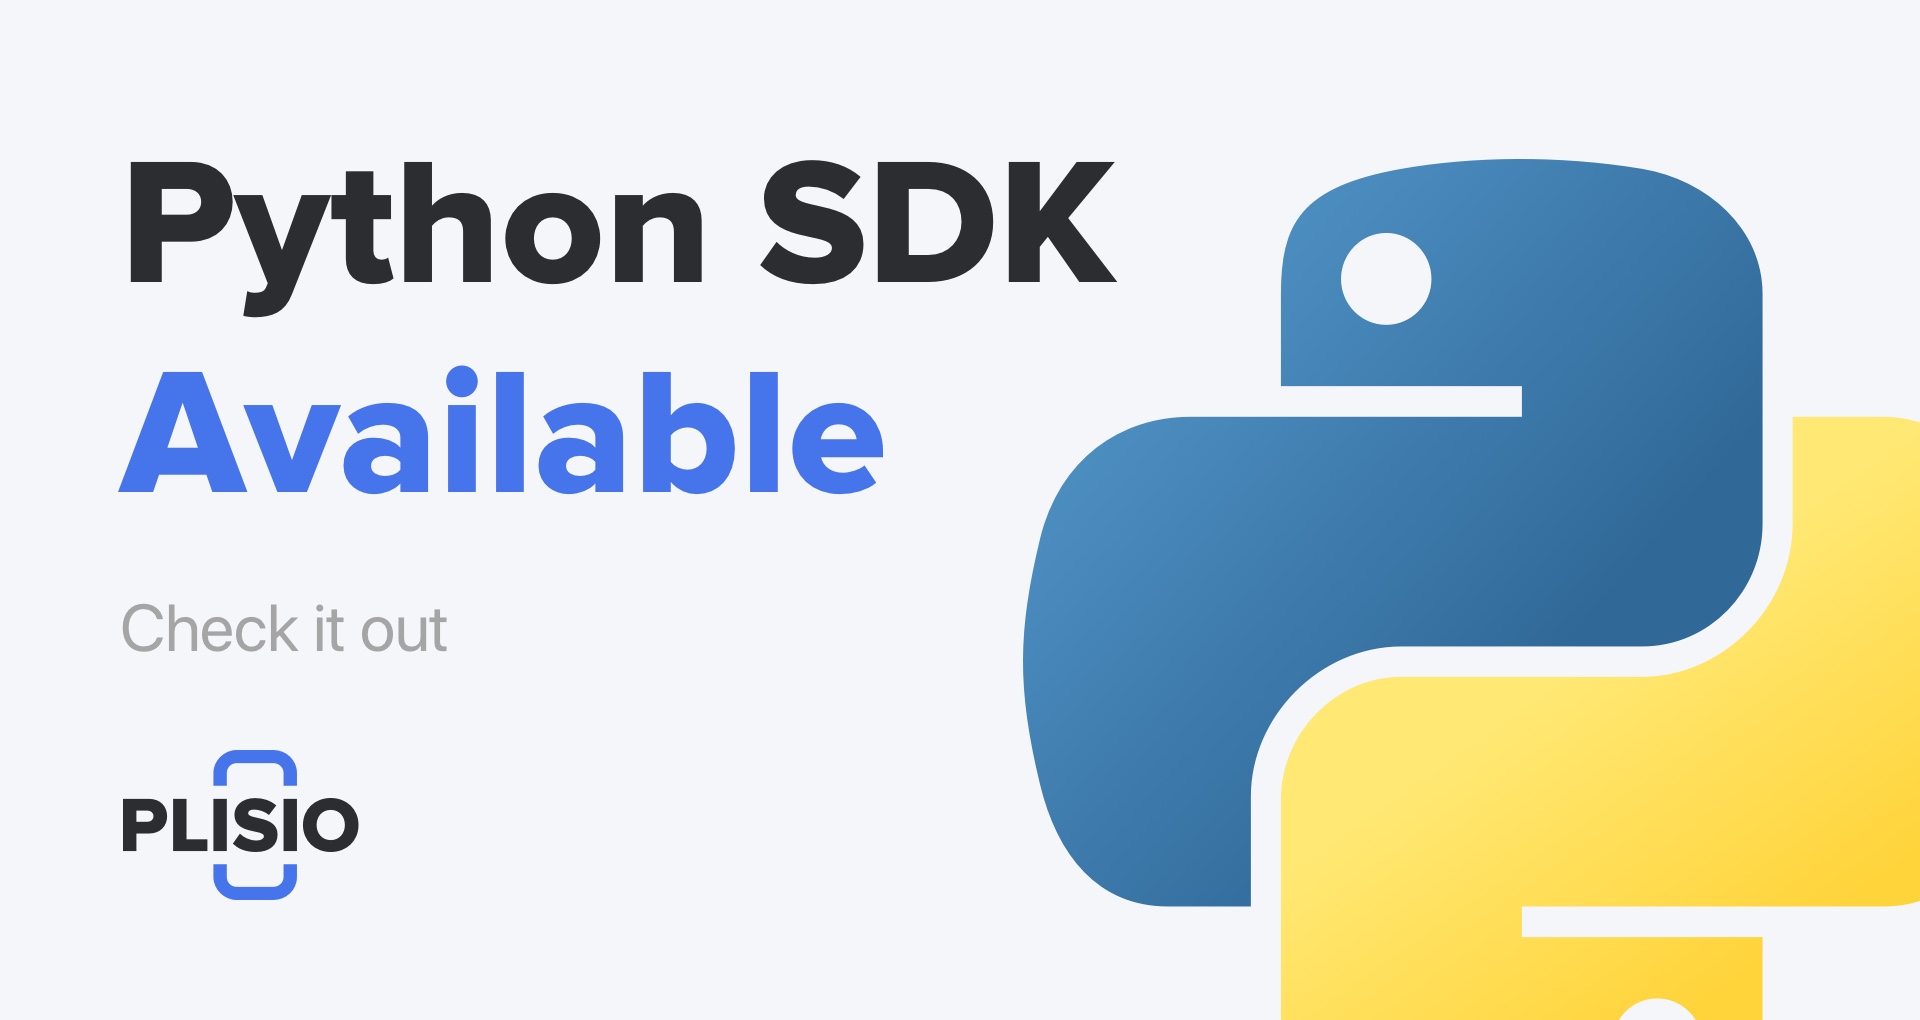 Python SDK พร้อมใช้งานแล้ว ตรวจสอบออก!